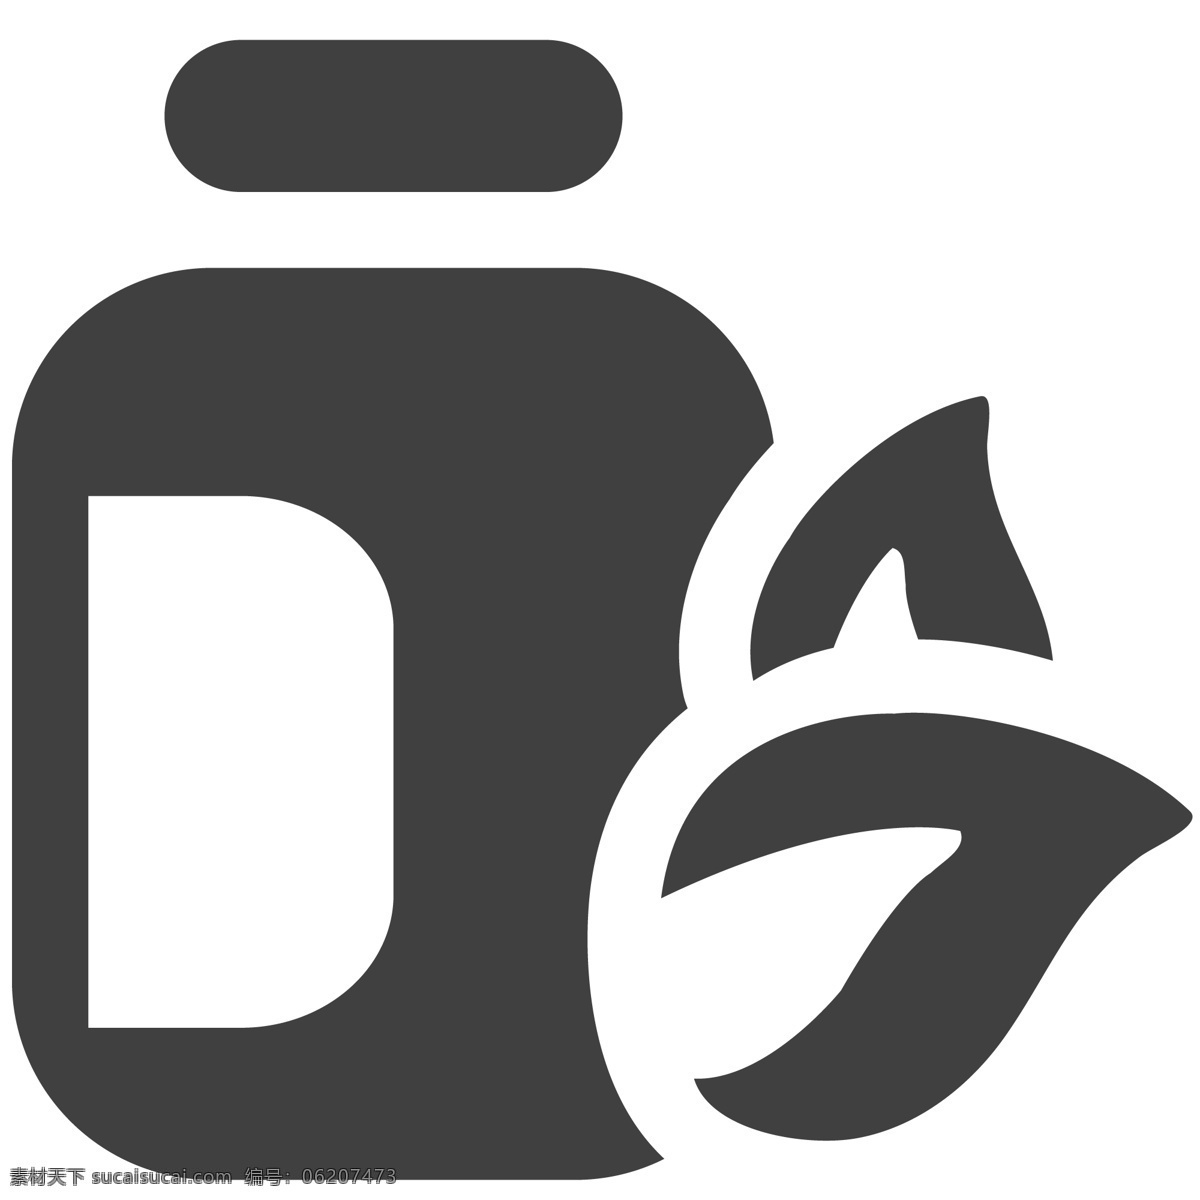 油桶图标设计 水桶 包装 生活图标 卡通图标 黑色的图标 手机图标 智能图标设计